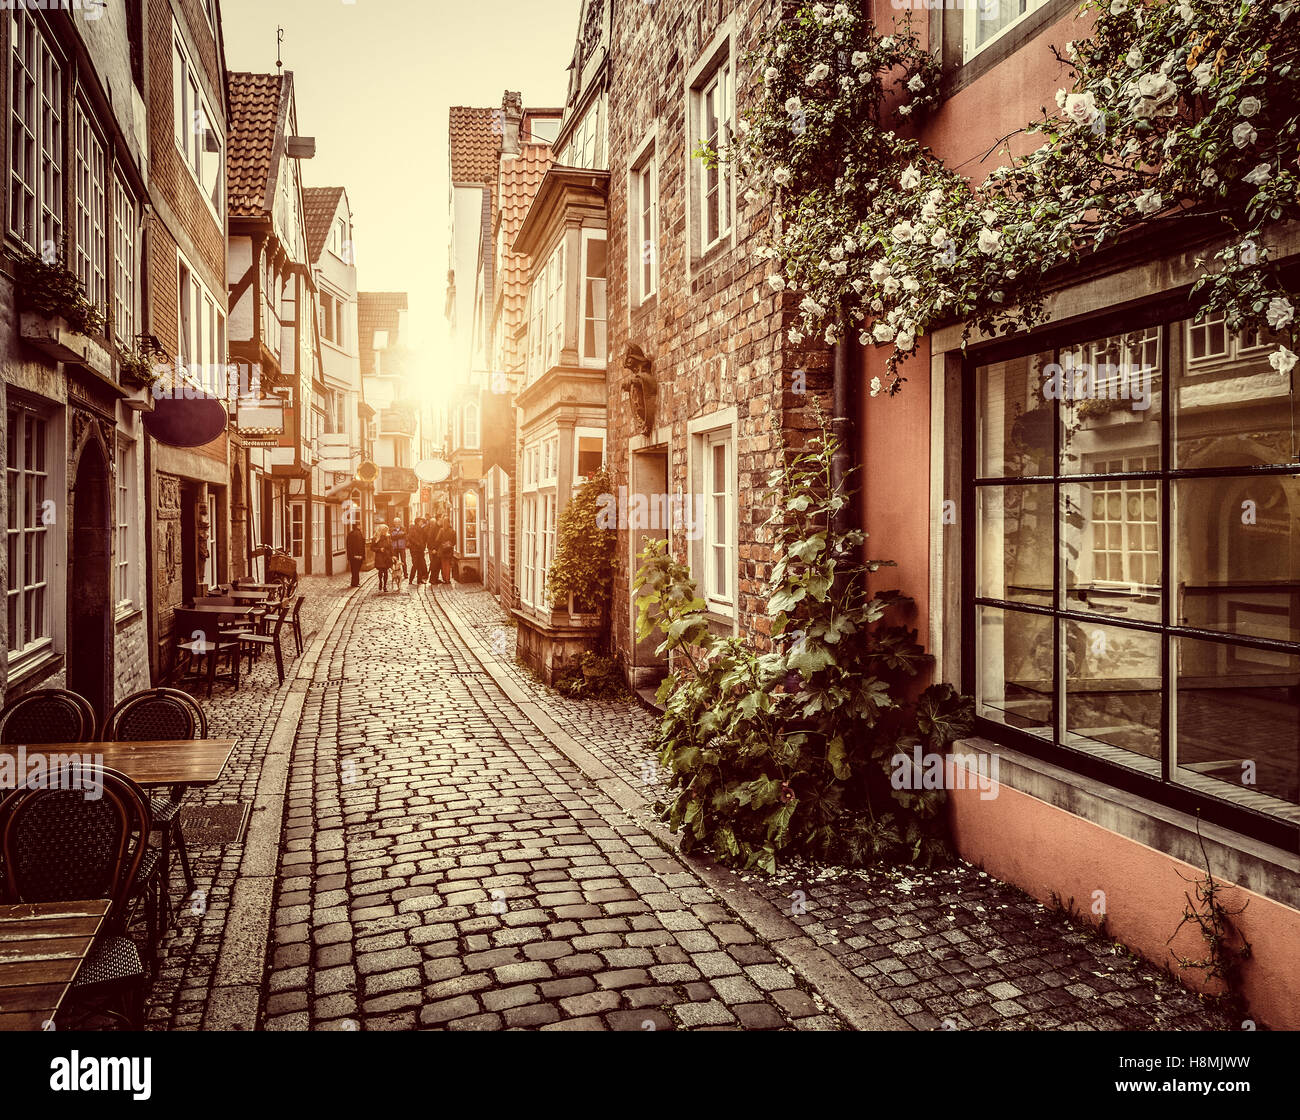 Incantevoli scene di strada in una città vecchia in Europa al tramonto con toni pastello retro vintage filtro e lens flare effetto luce solare Foto Stock